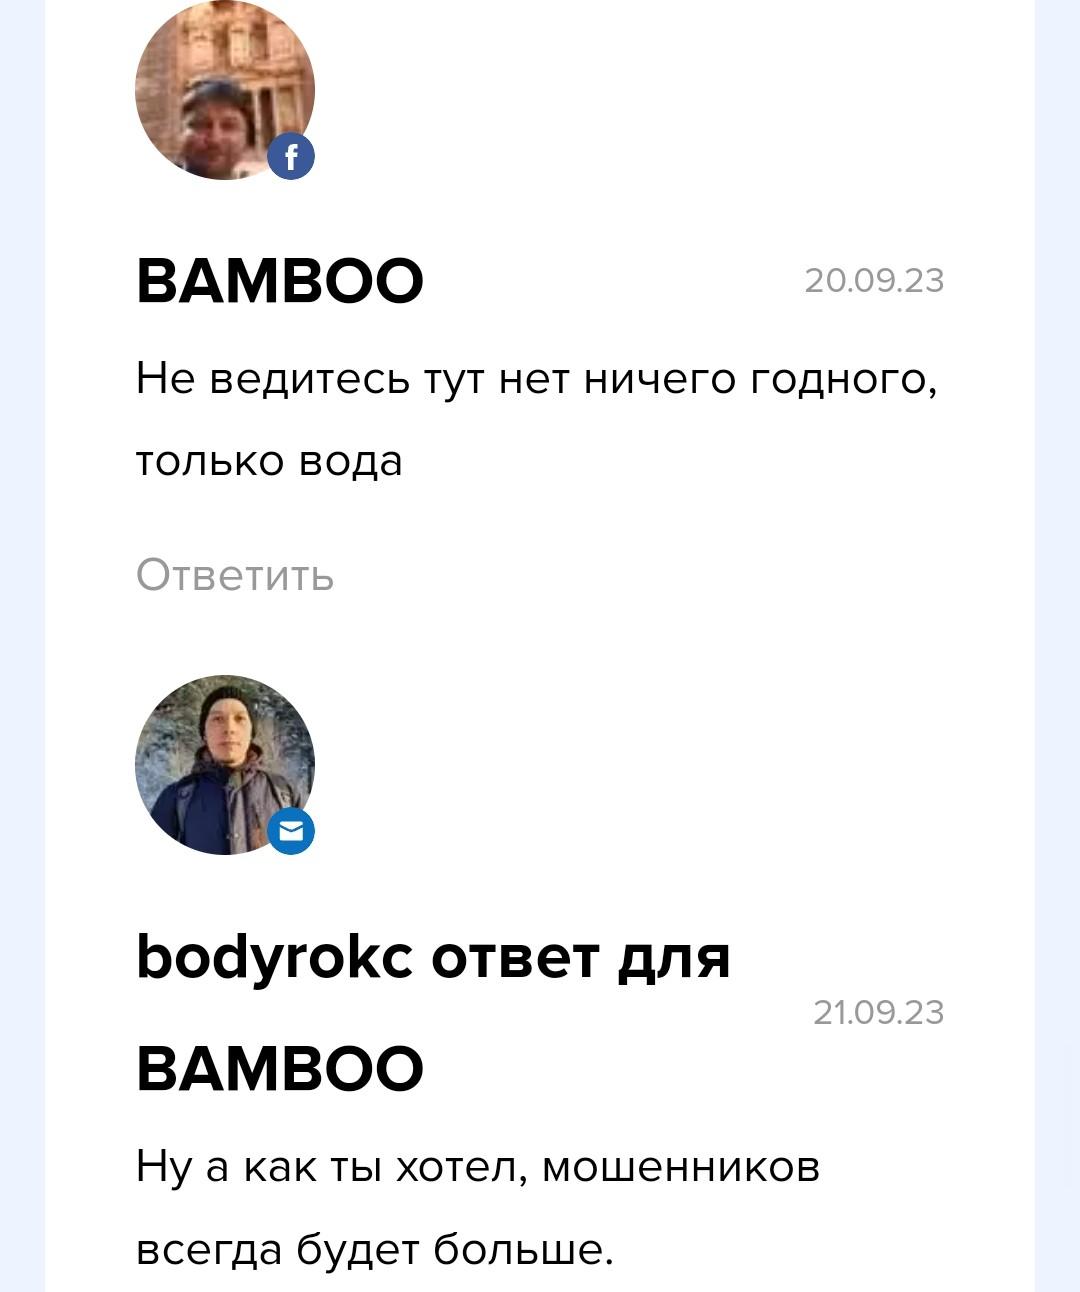 Станислав Ермилов отзывы